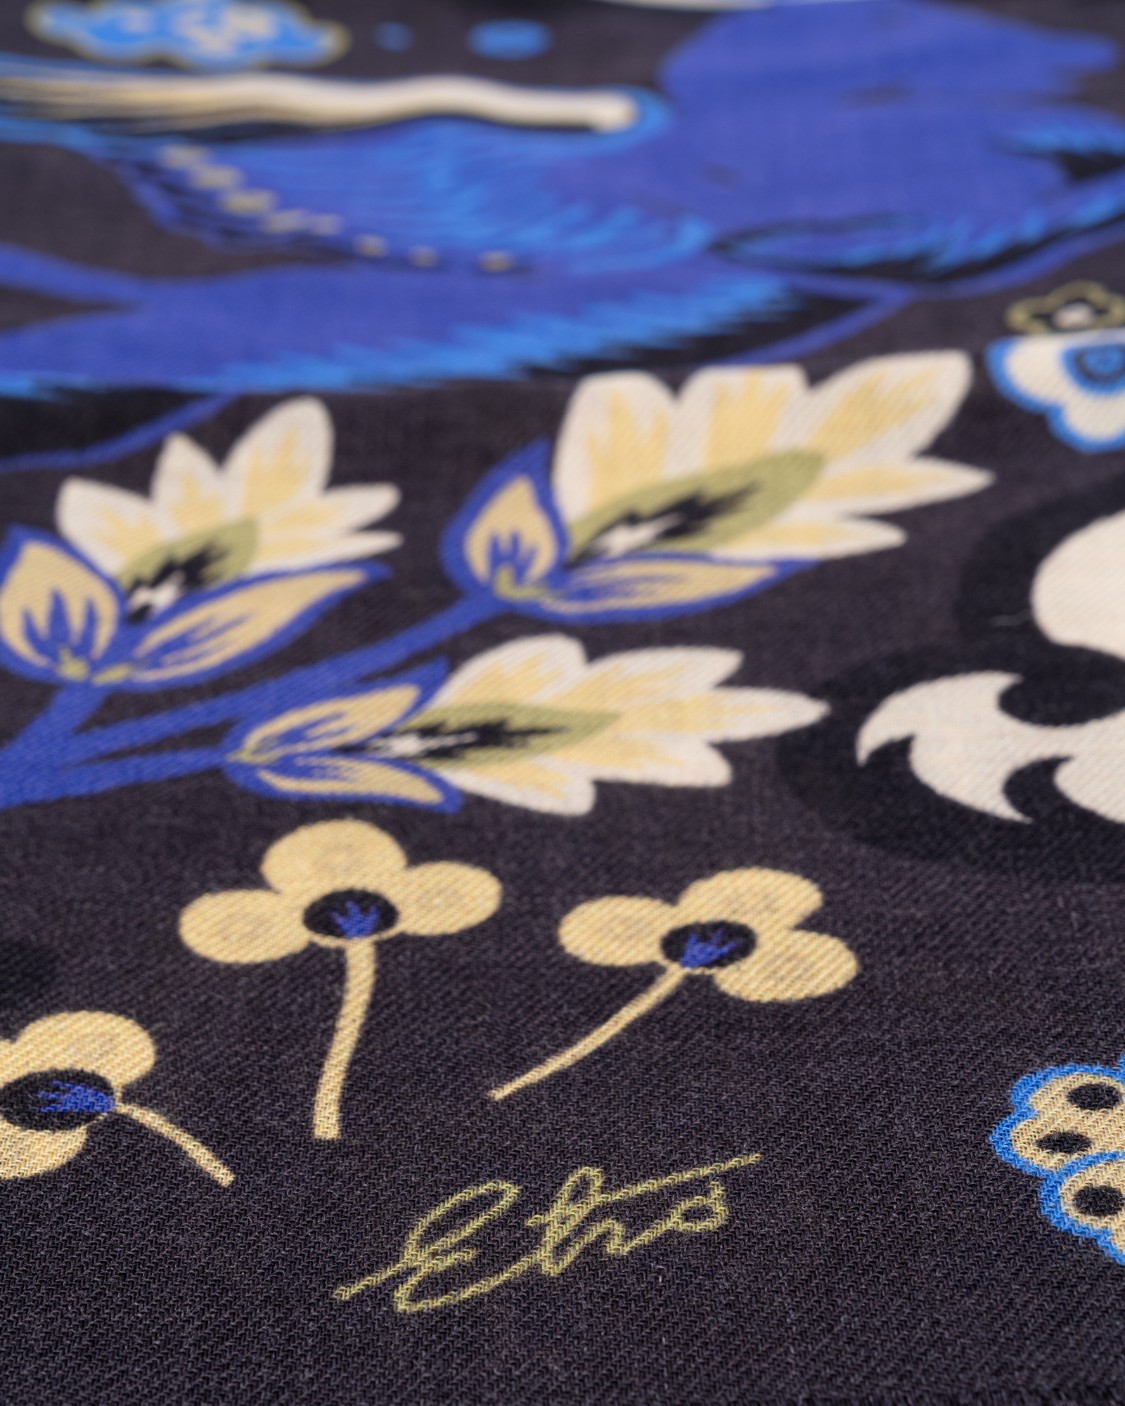 shop ETRO Saldi Sciarpa: Etro sciarpa in lana e seta stampata, decorata da bordi rifiniti con frange.
Dimensioni: 65 x 168 cm.
Composizone: 70% lana, 30% seta.
Made in Italy.. 10007 4508-0001 number 7664959